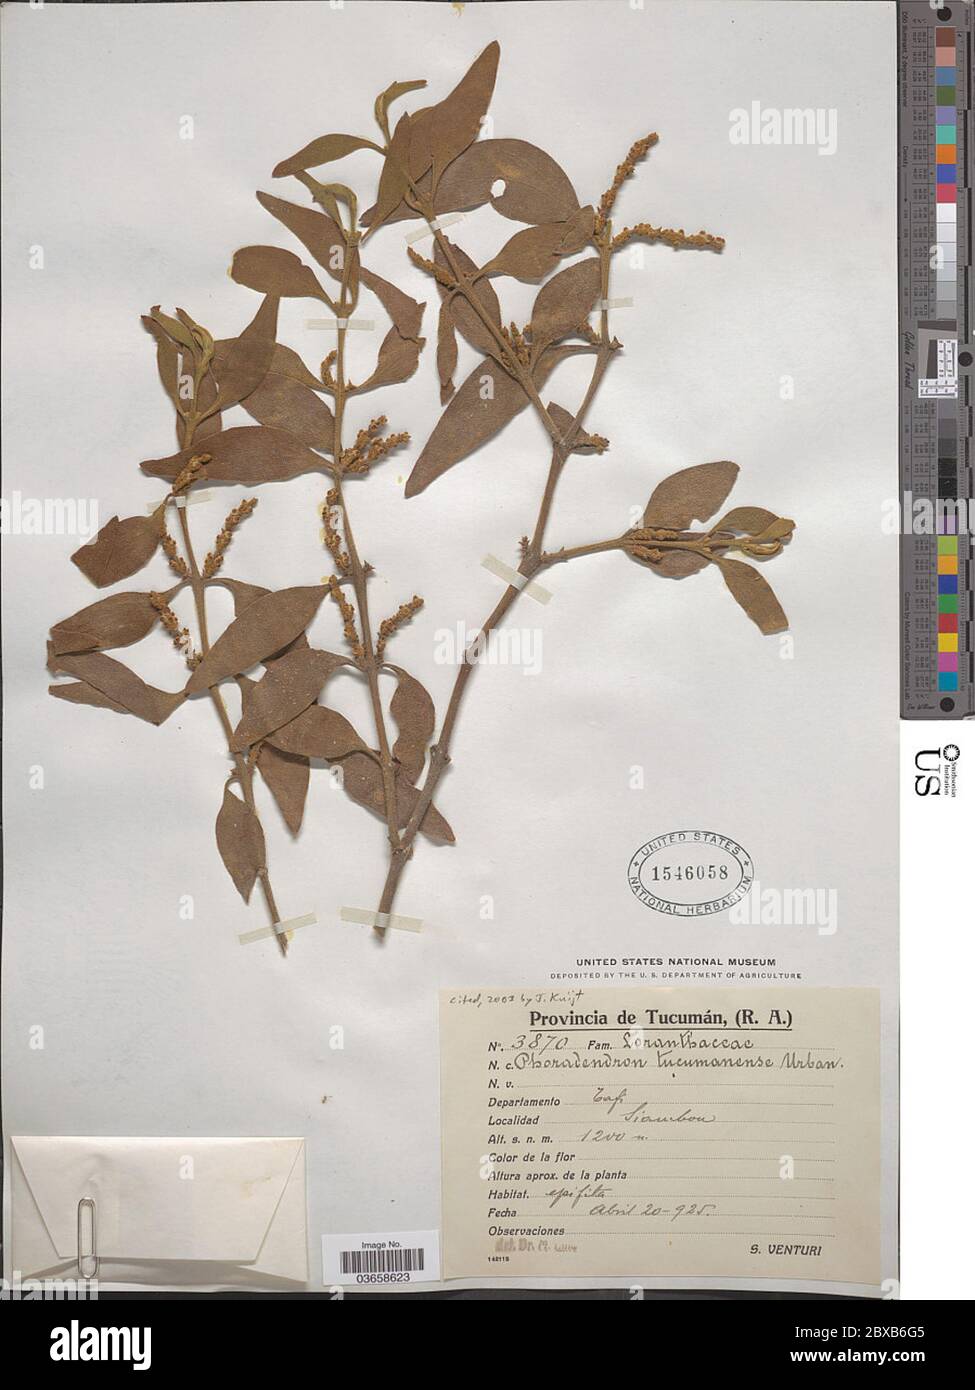 Phoradendron tucumanense Urb Phoradendron tucumanense Urb. Stock Photo